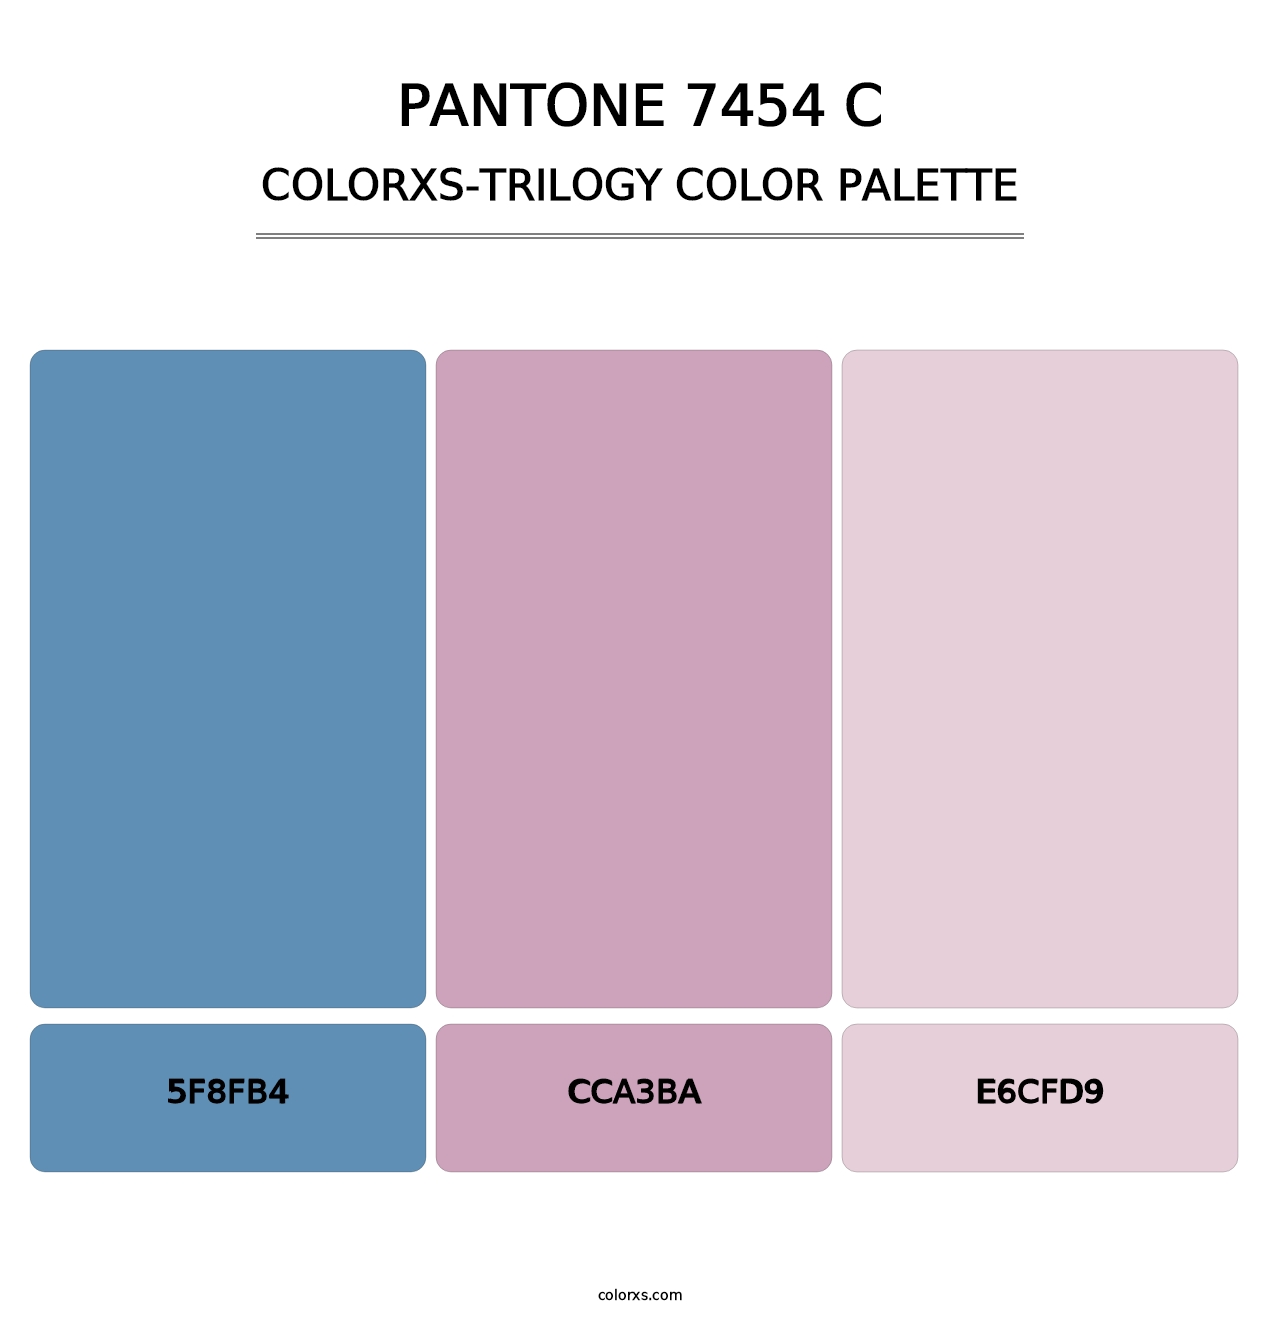 PANTONE 7454 C - Colorxs Trilogy Palette